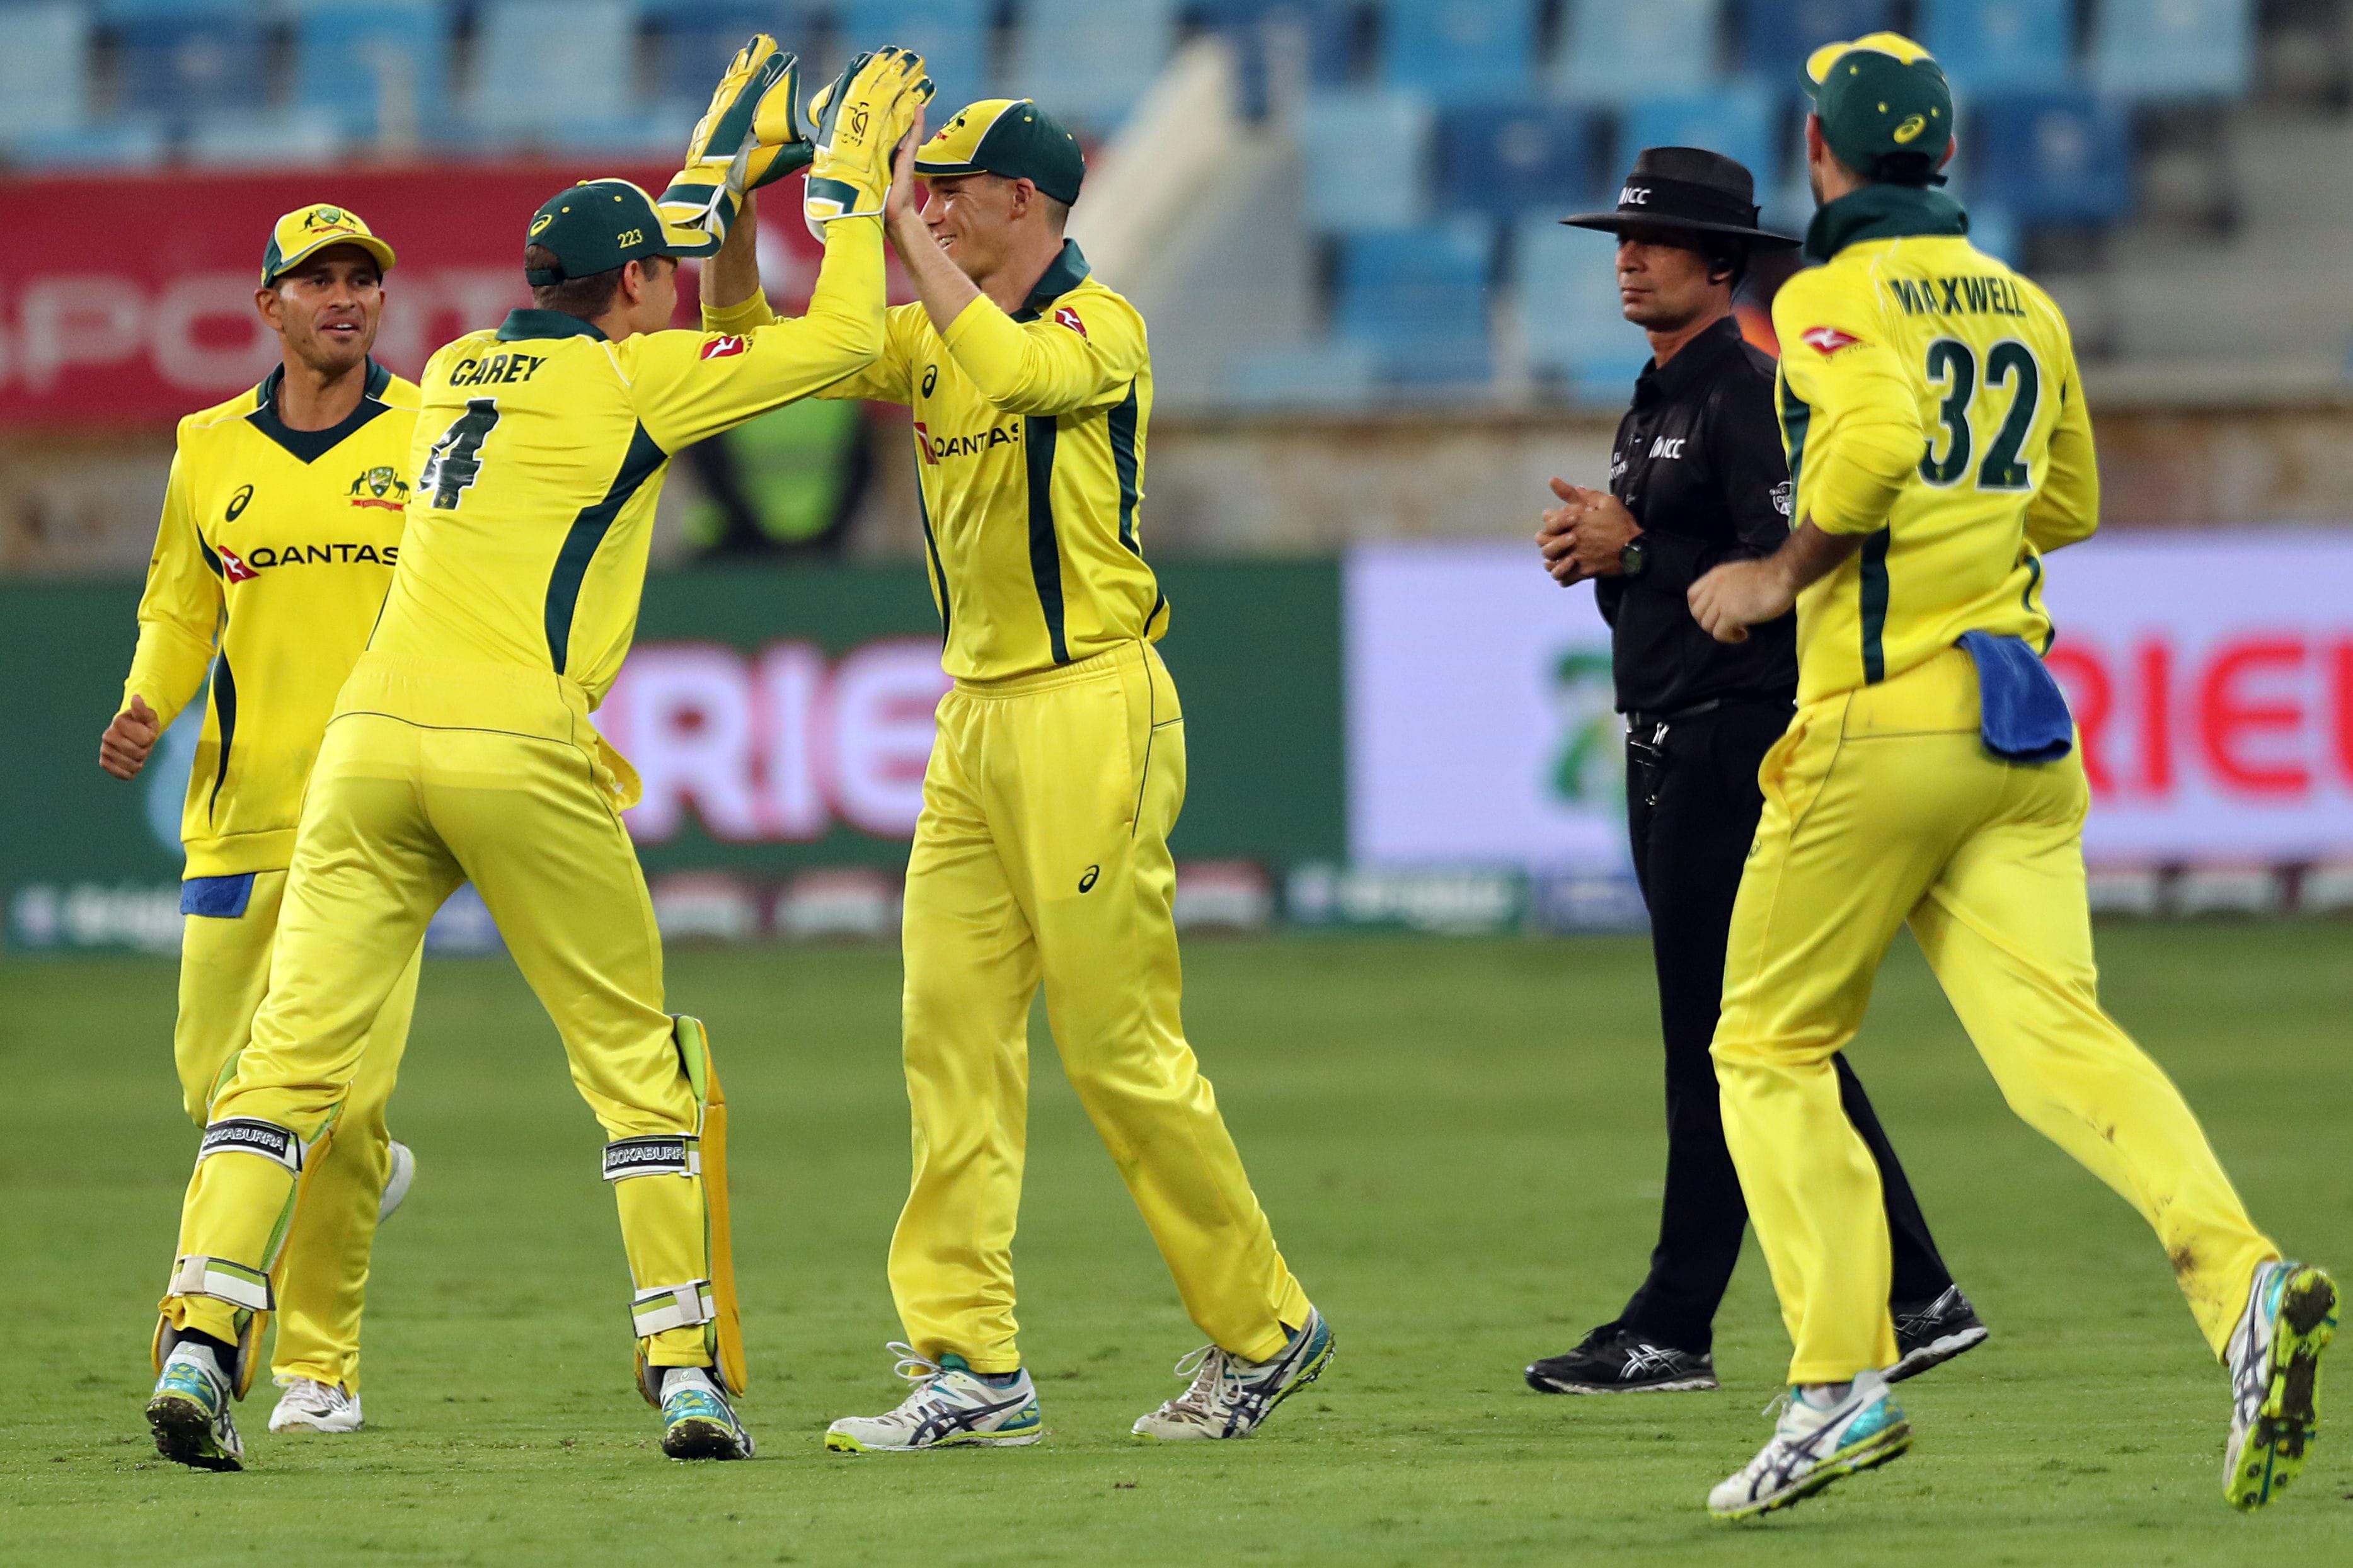 Fourth ODI: Pakistan vs Australia